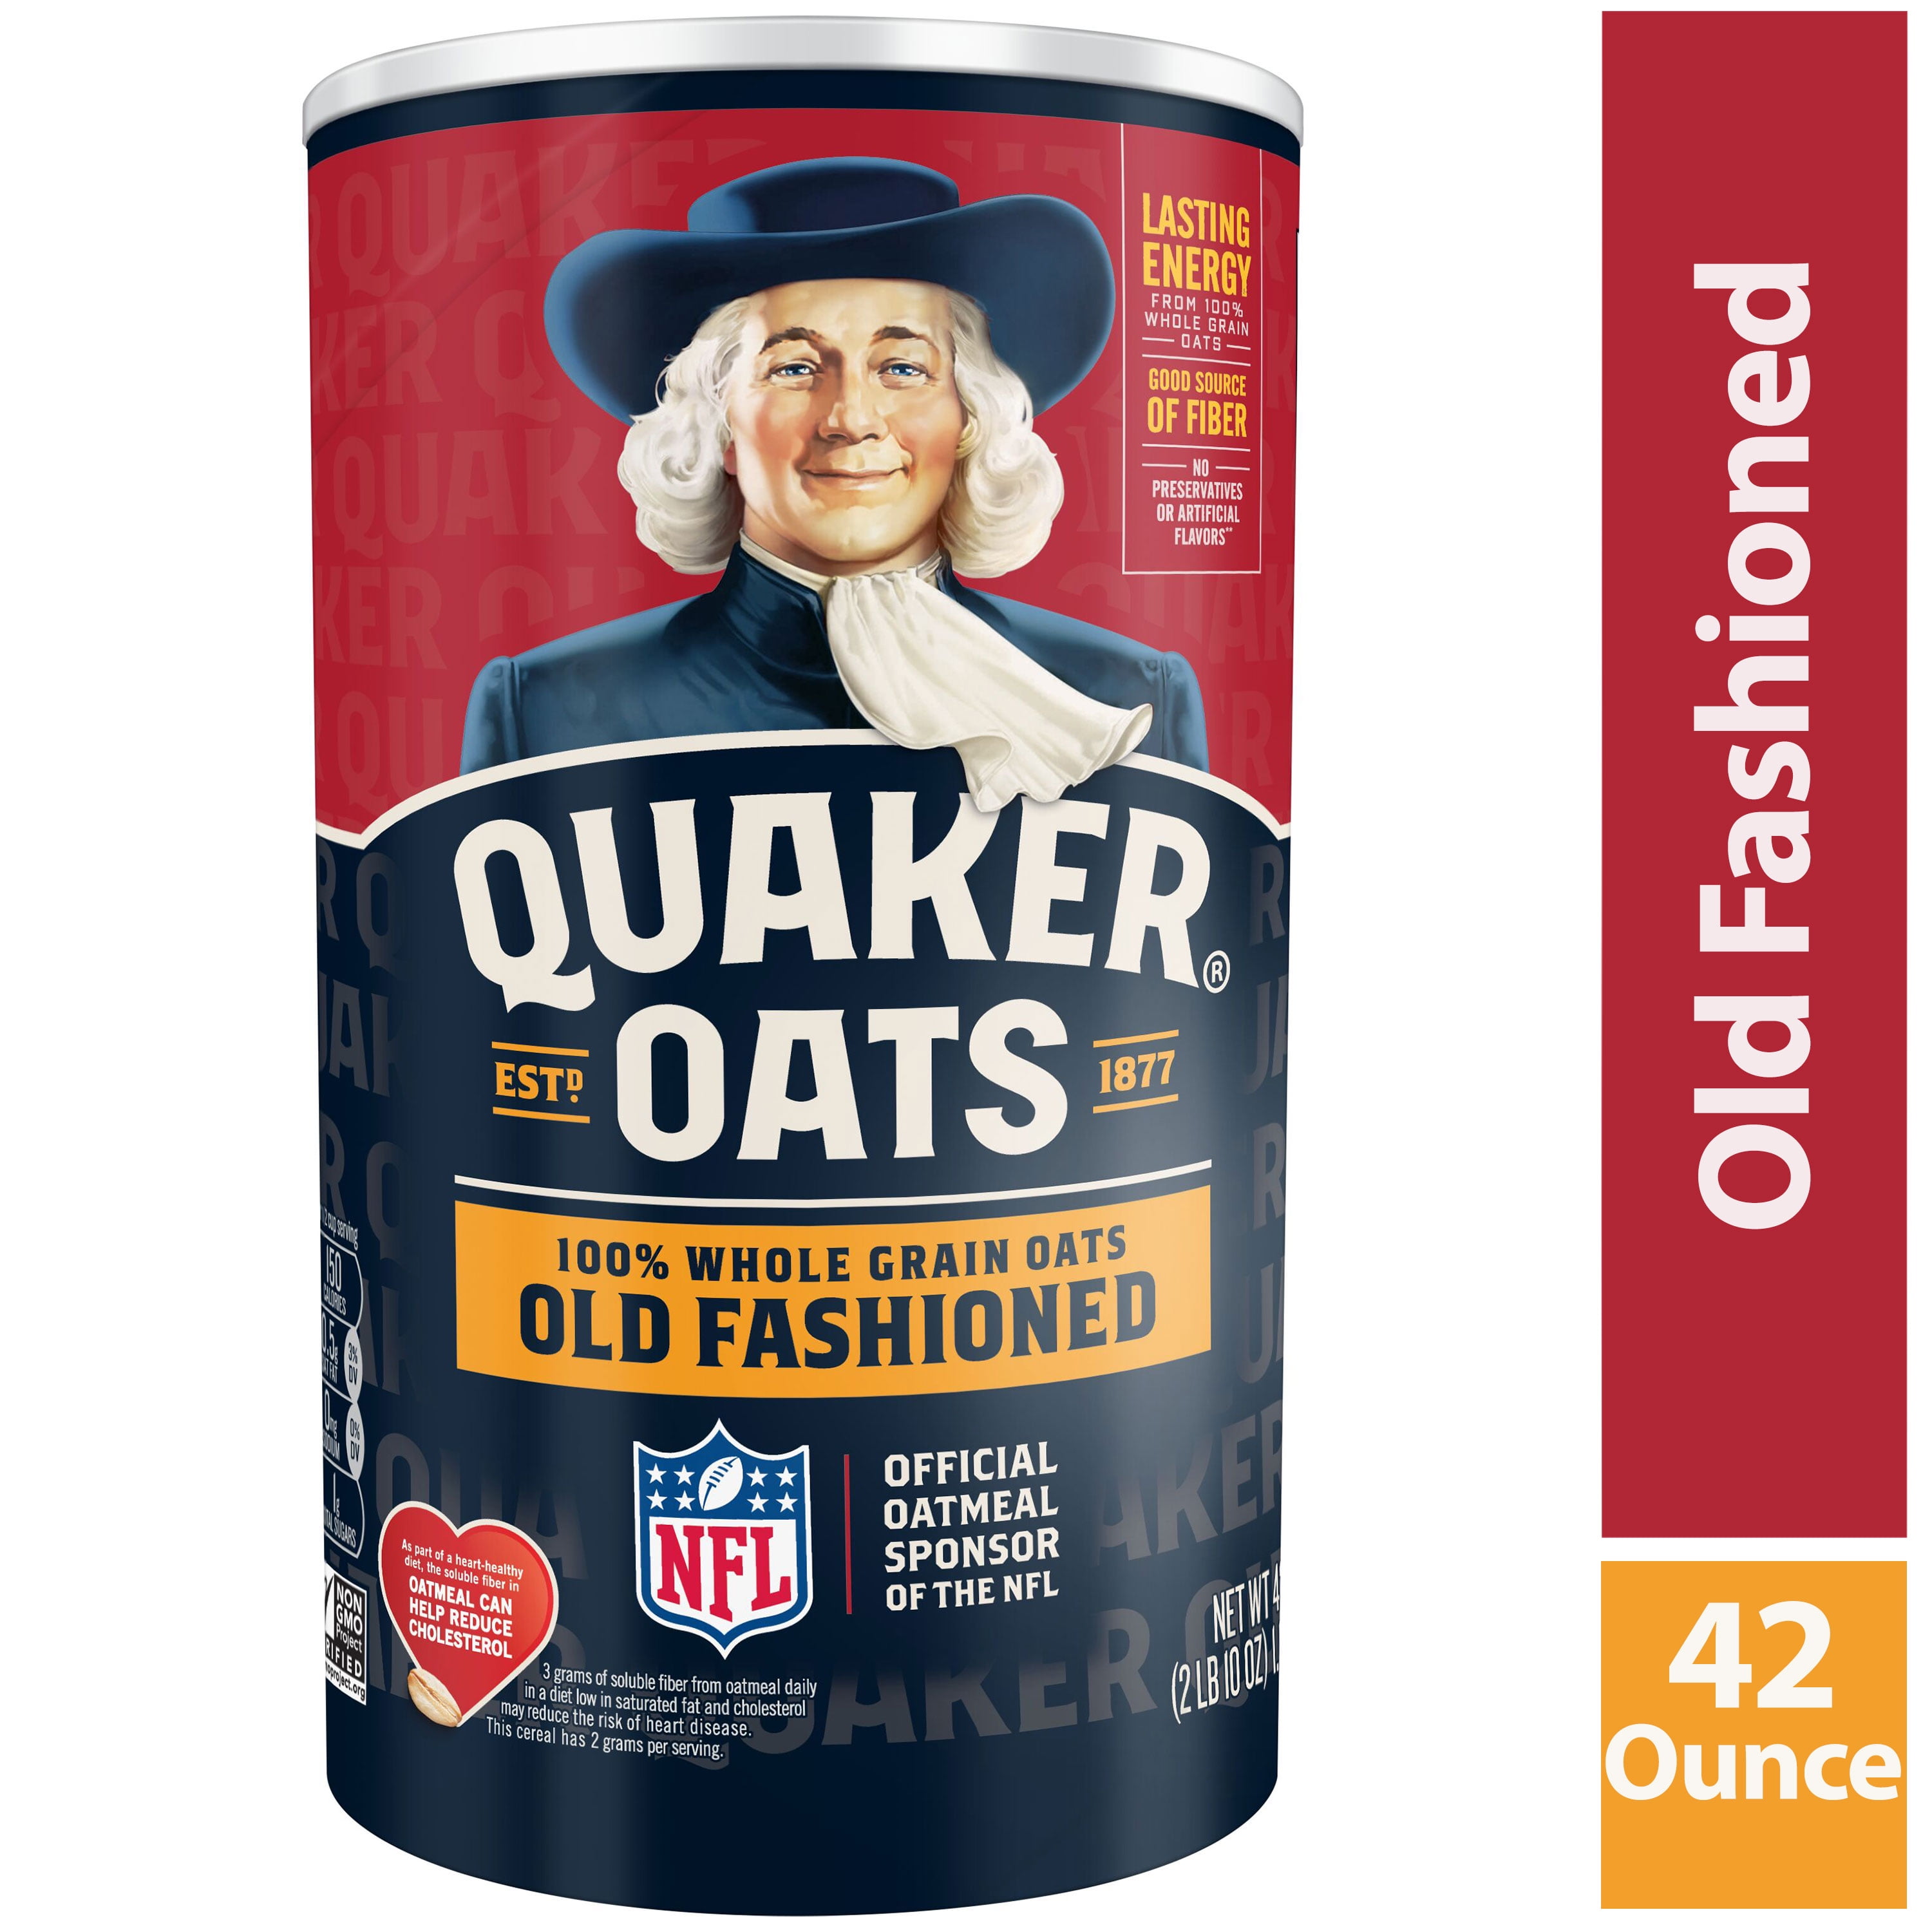 Quaker Oats (@Quaker) / X